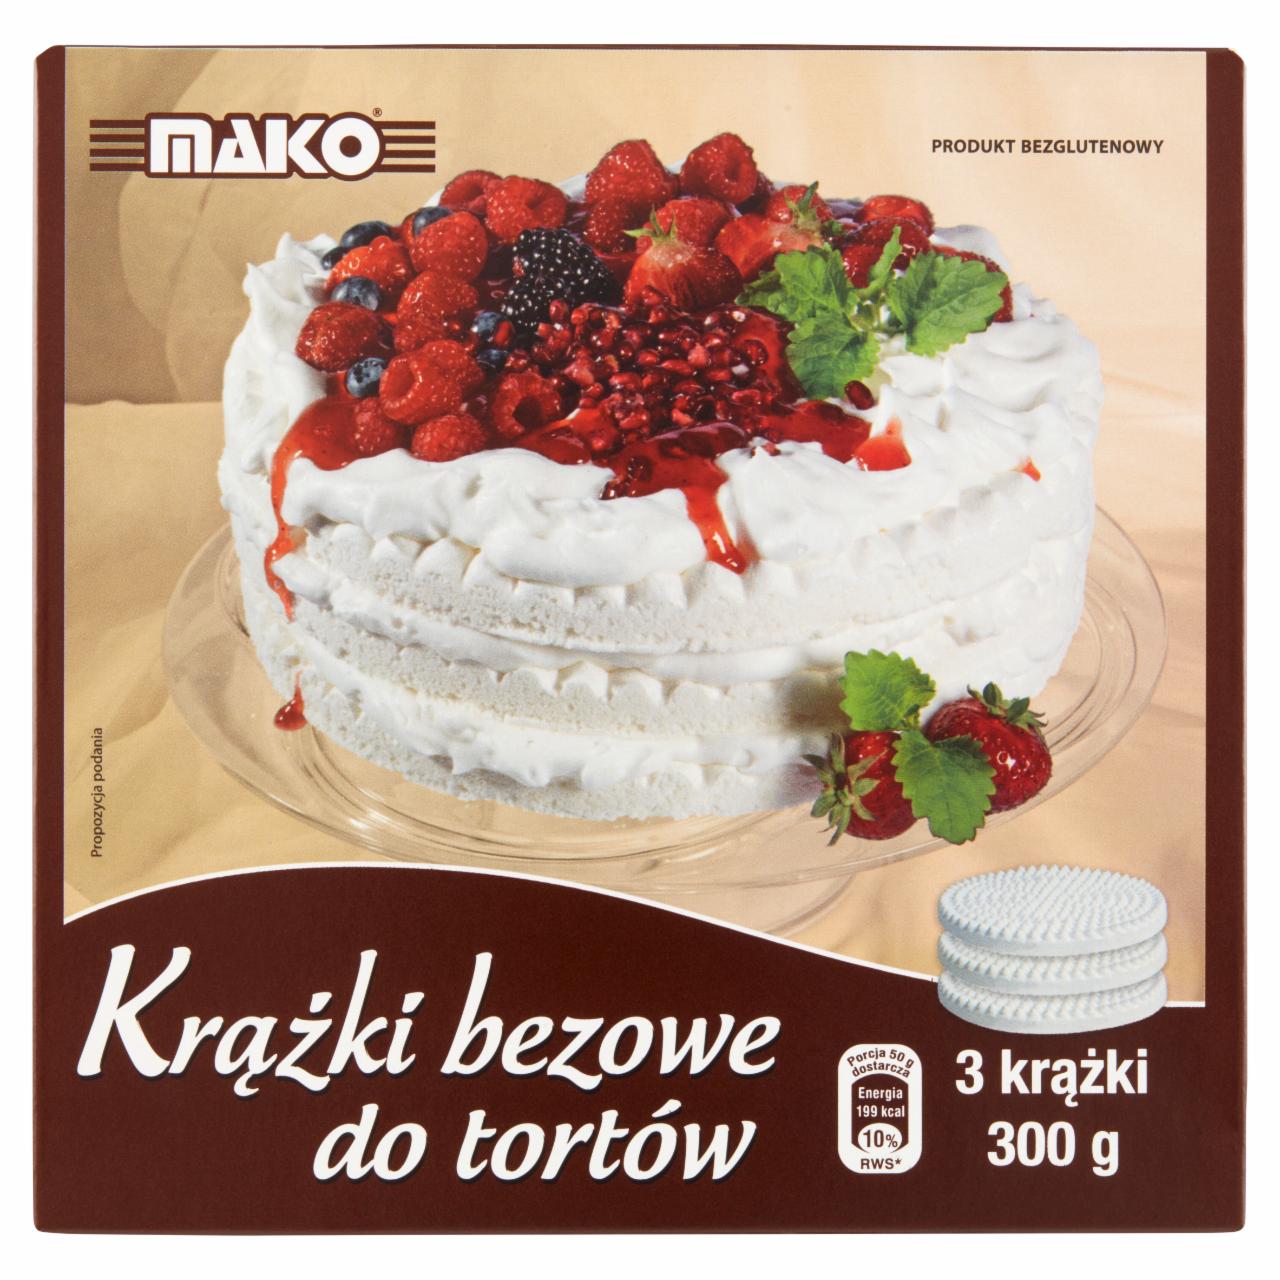 Zdjęcia - Mako Krążki bezowe do tortów 300 g (3 sztuki)